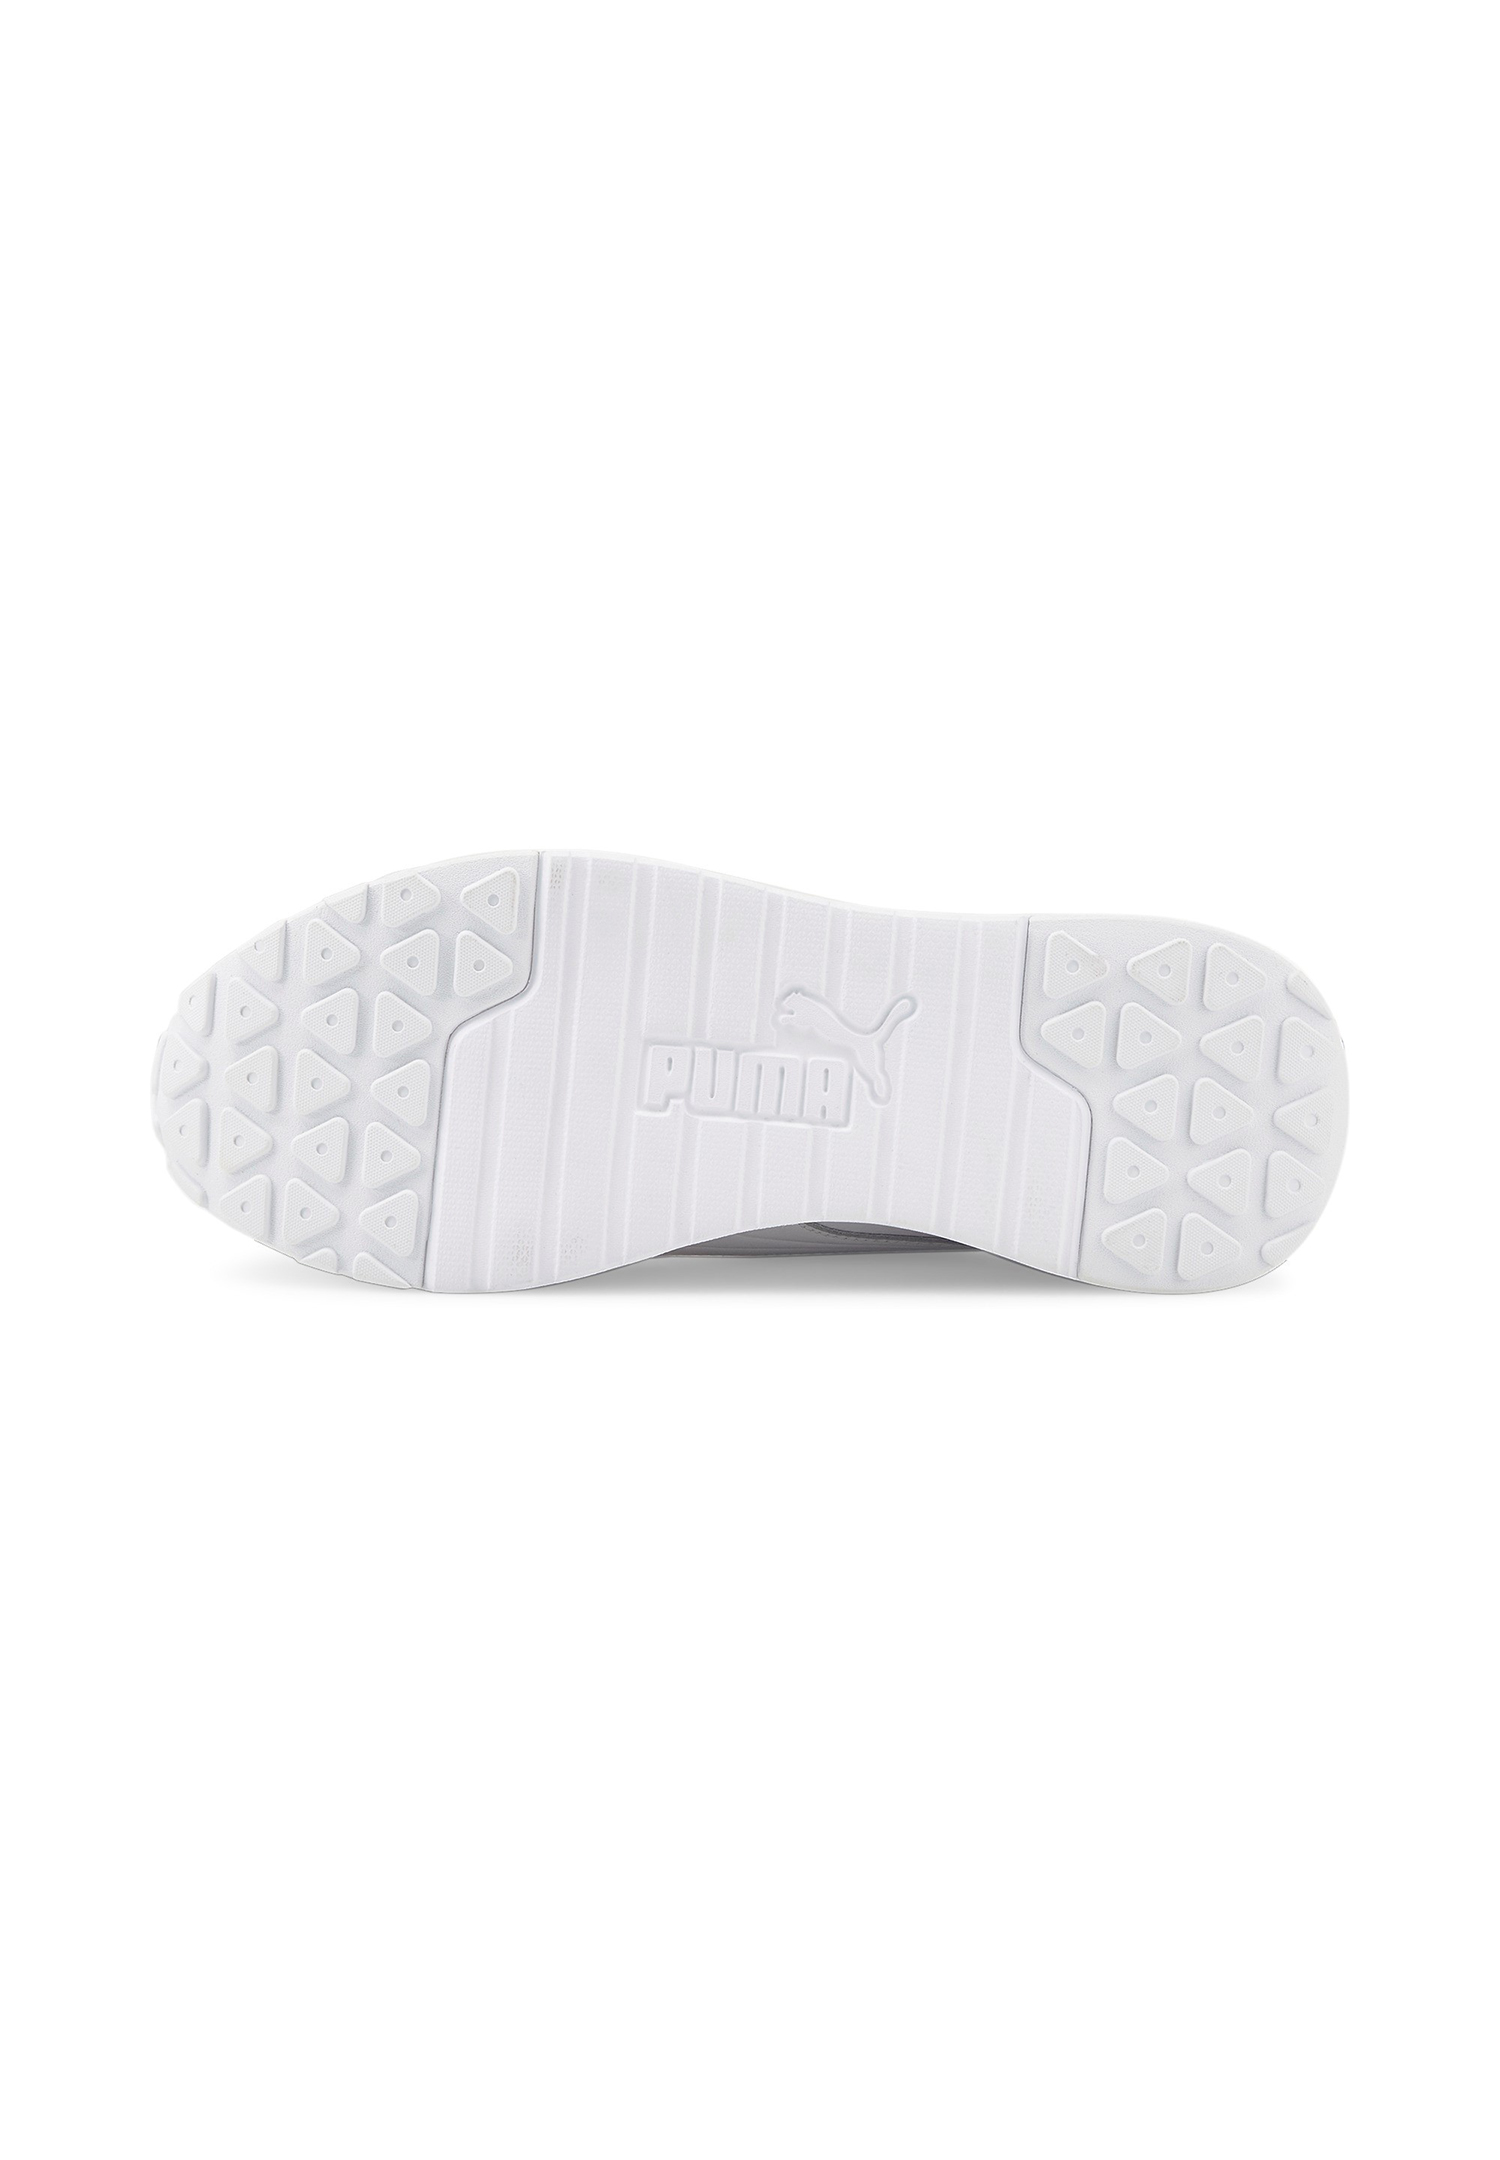 Puma R78 Voyage Premium L Damen Sneaker 383838 Weiß